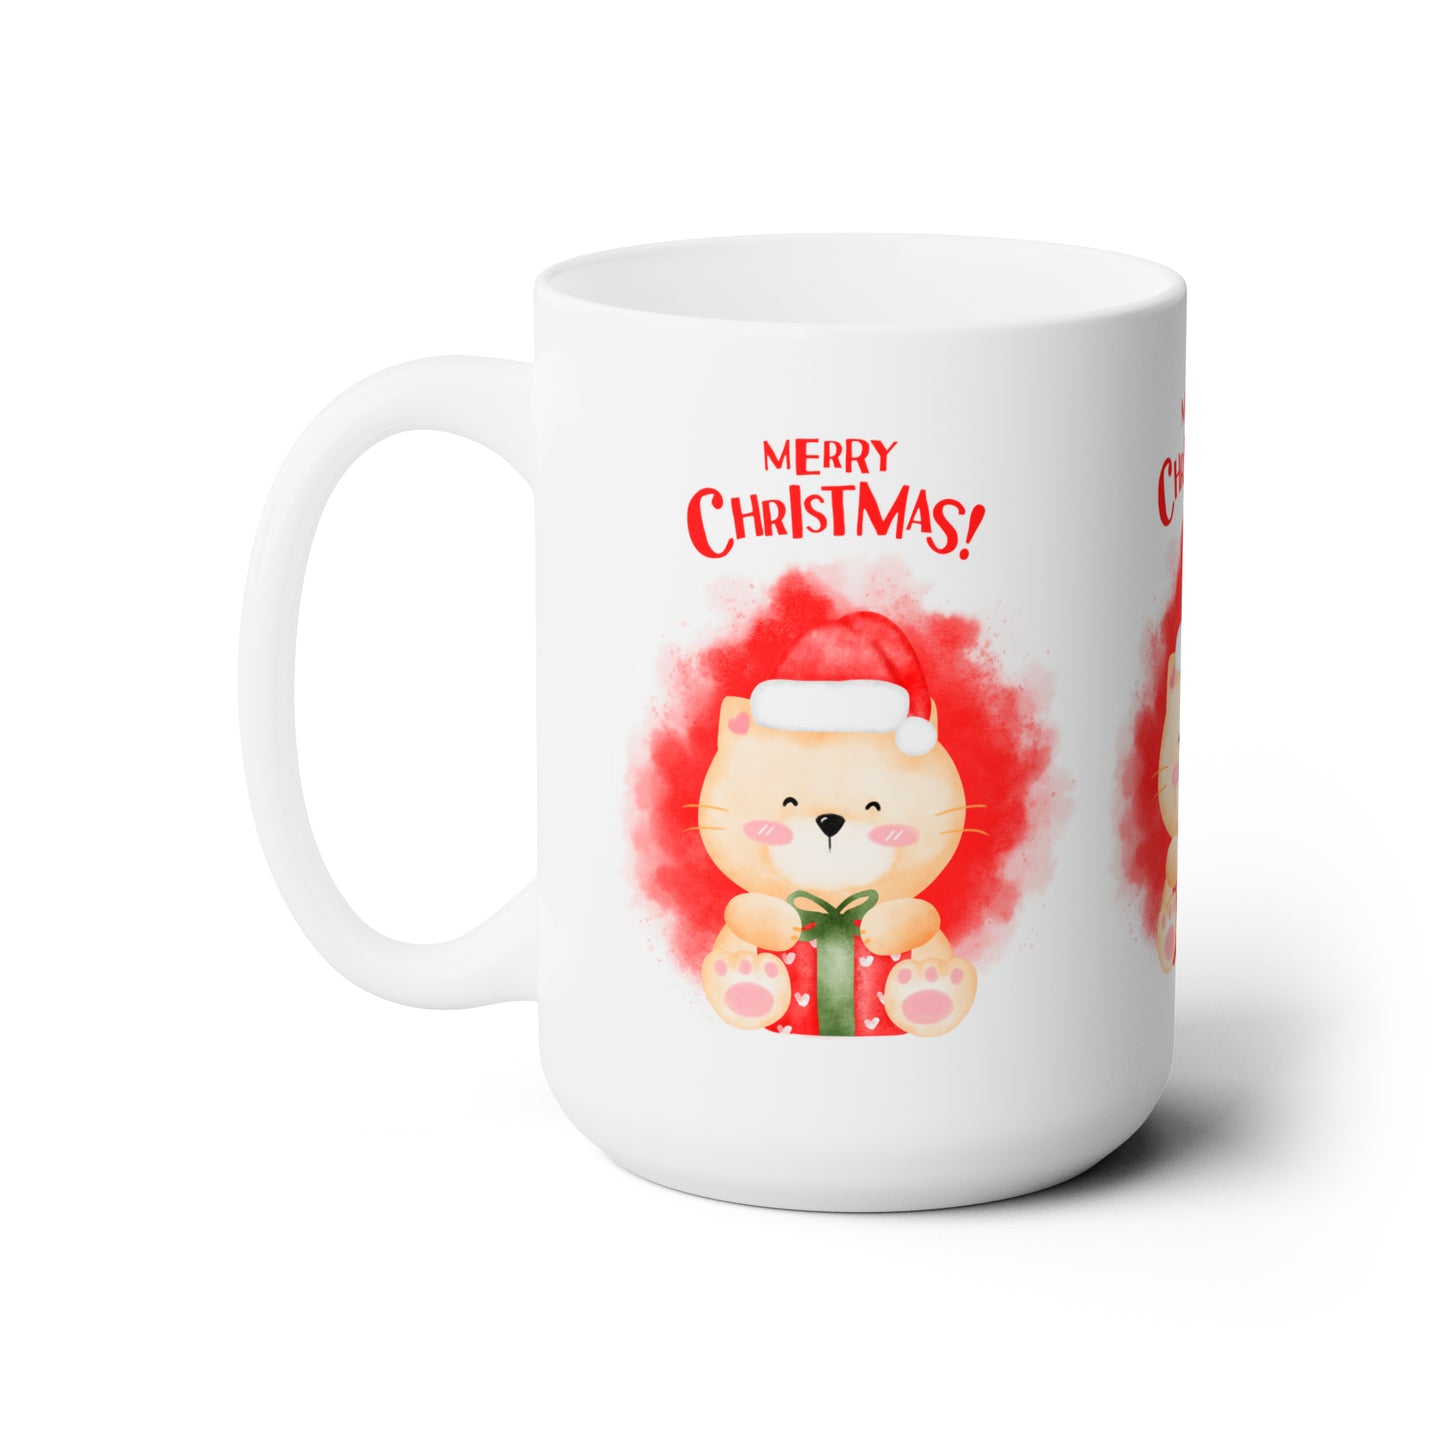 Merry Christmas Printed Ceramic Mug, 15oz, Red